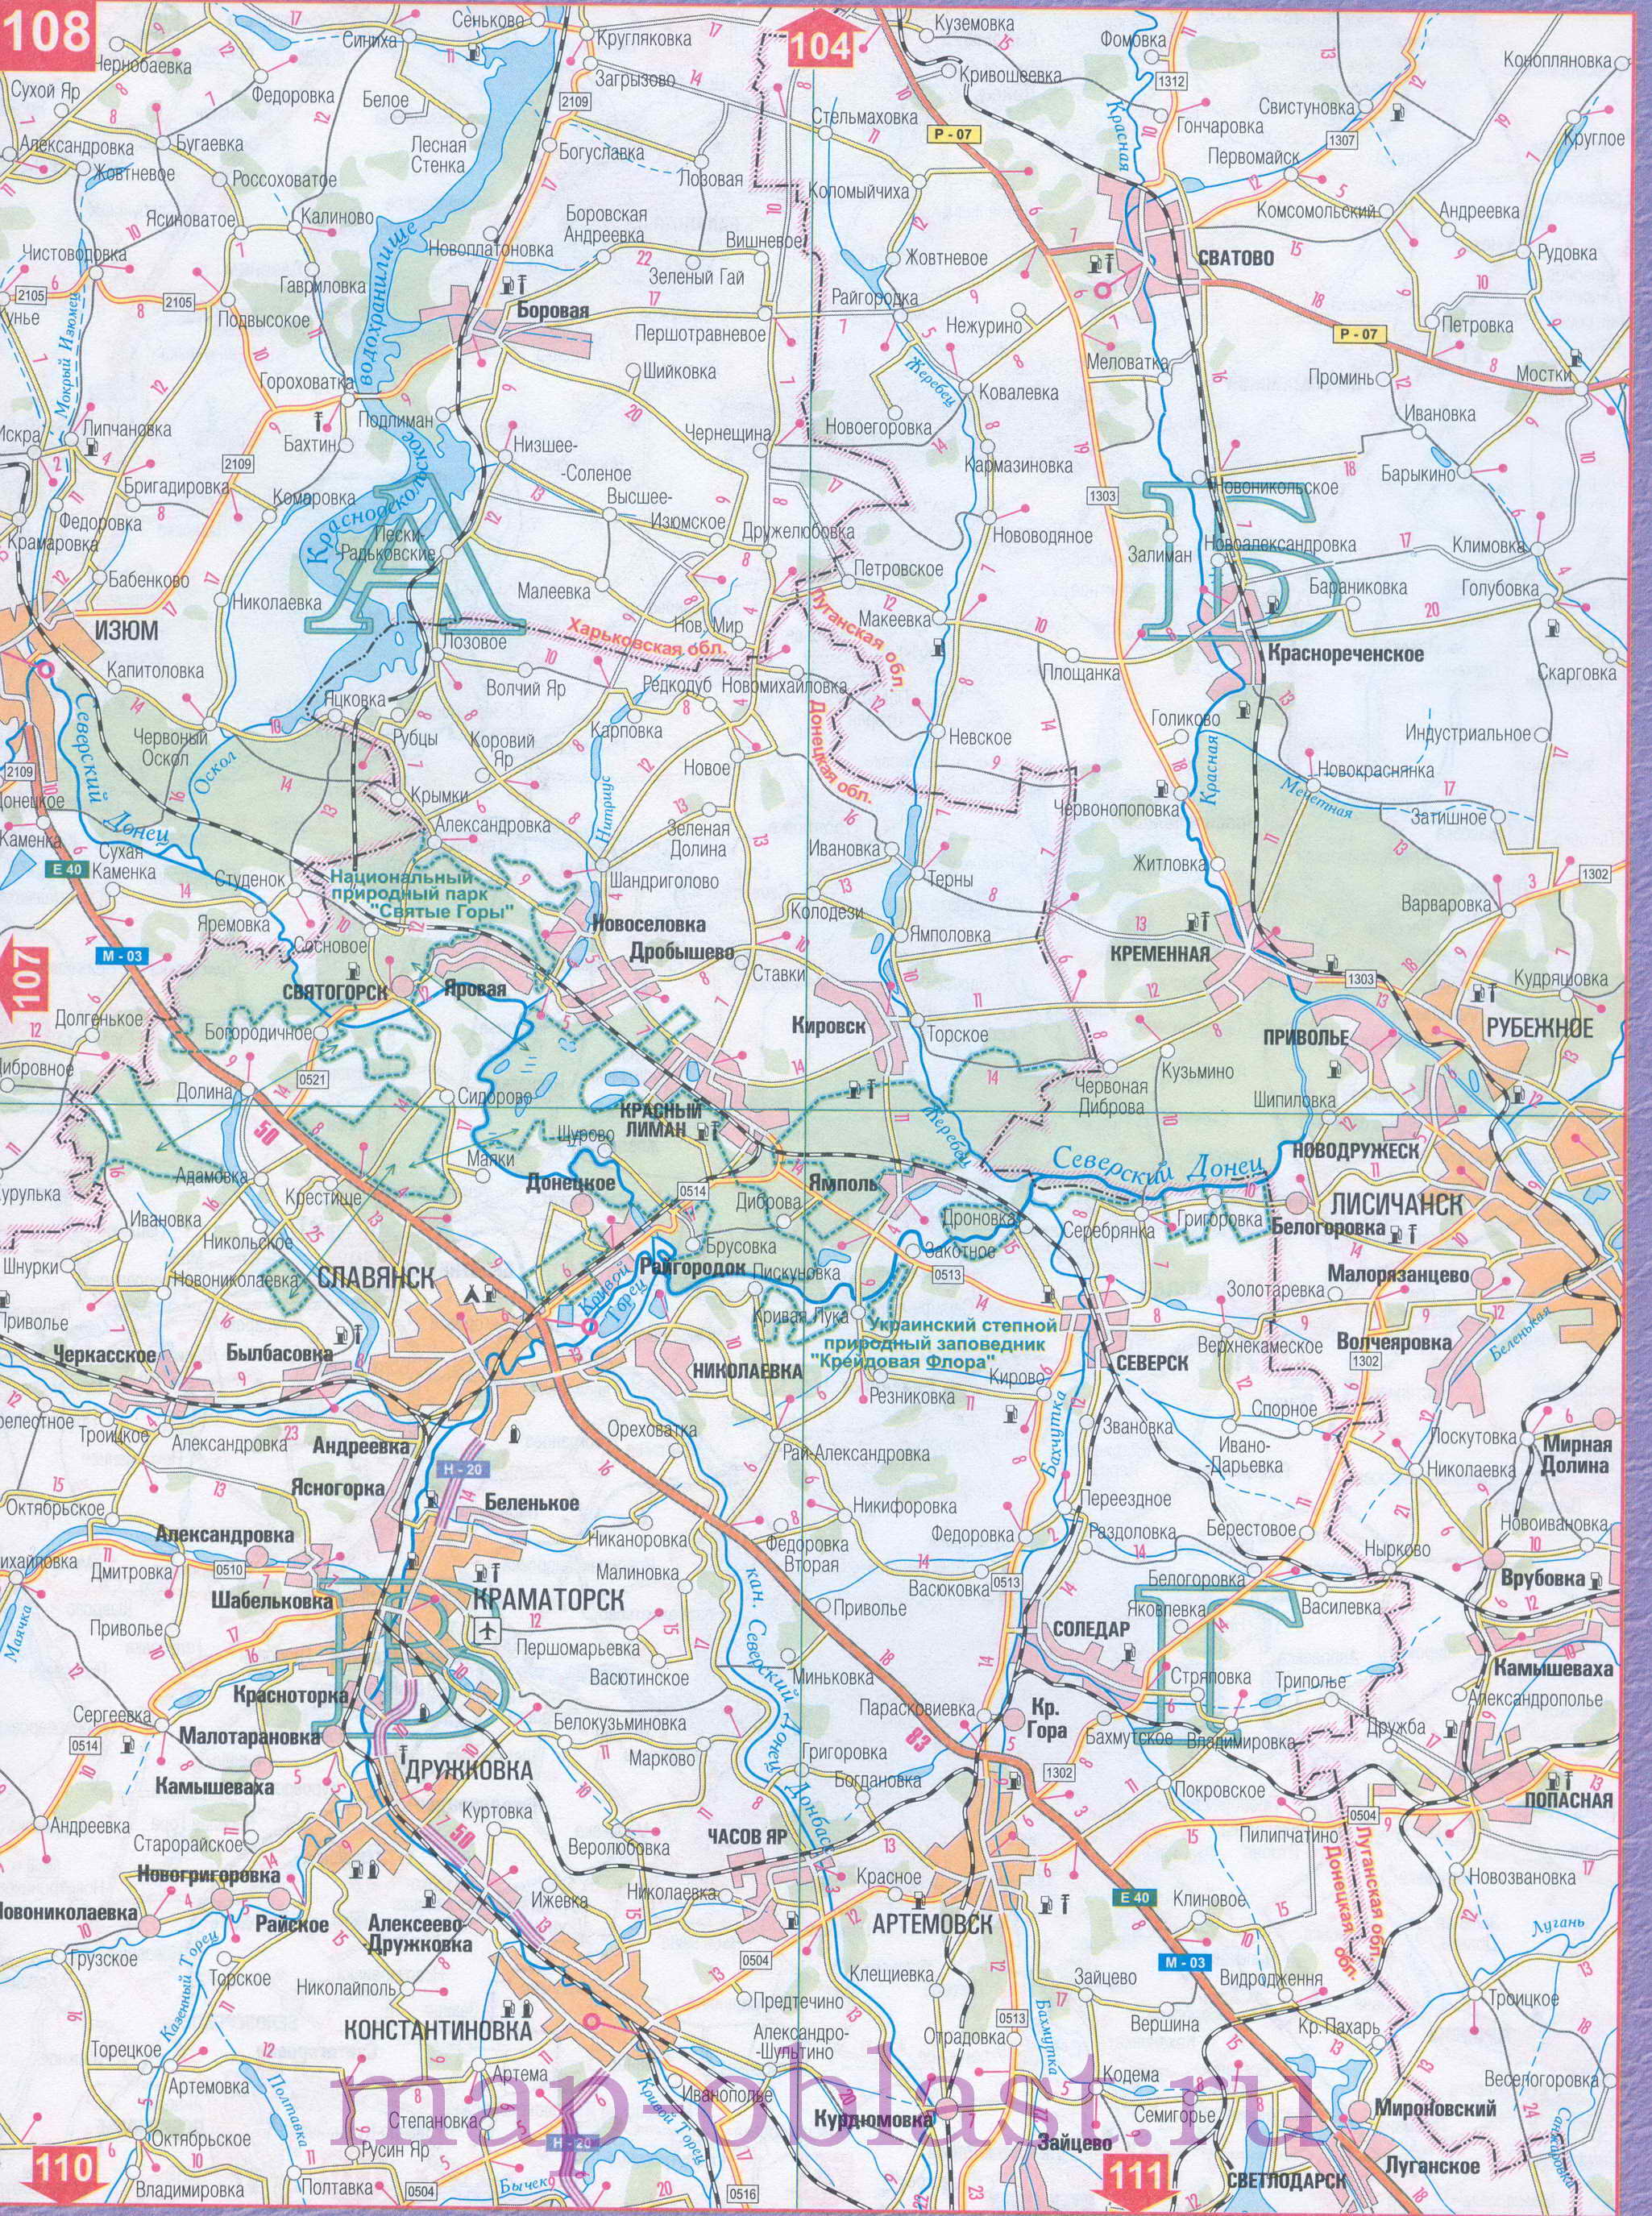 Автомобильная карта Восточной Украины - Харьковская область. Большая подробная карта Харьковской области, C1 - 